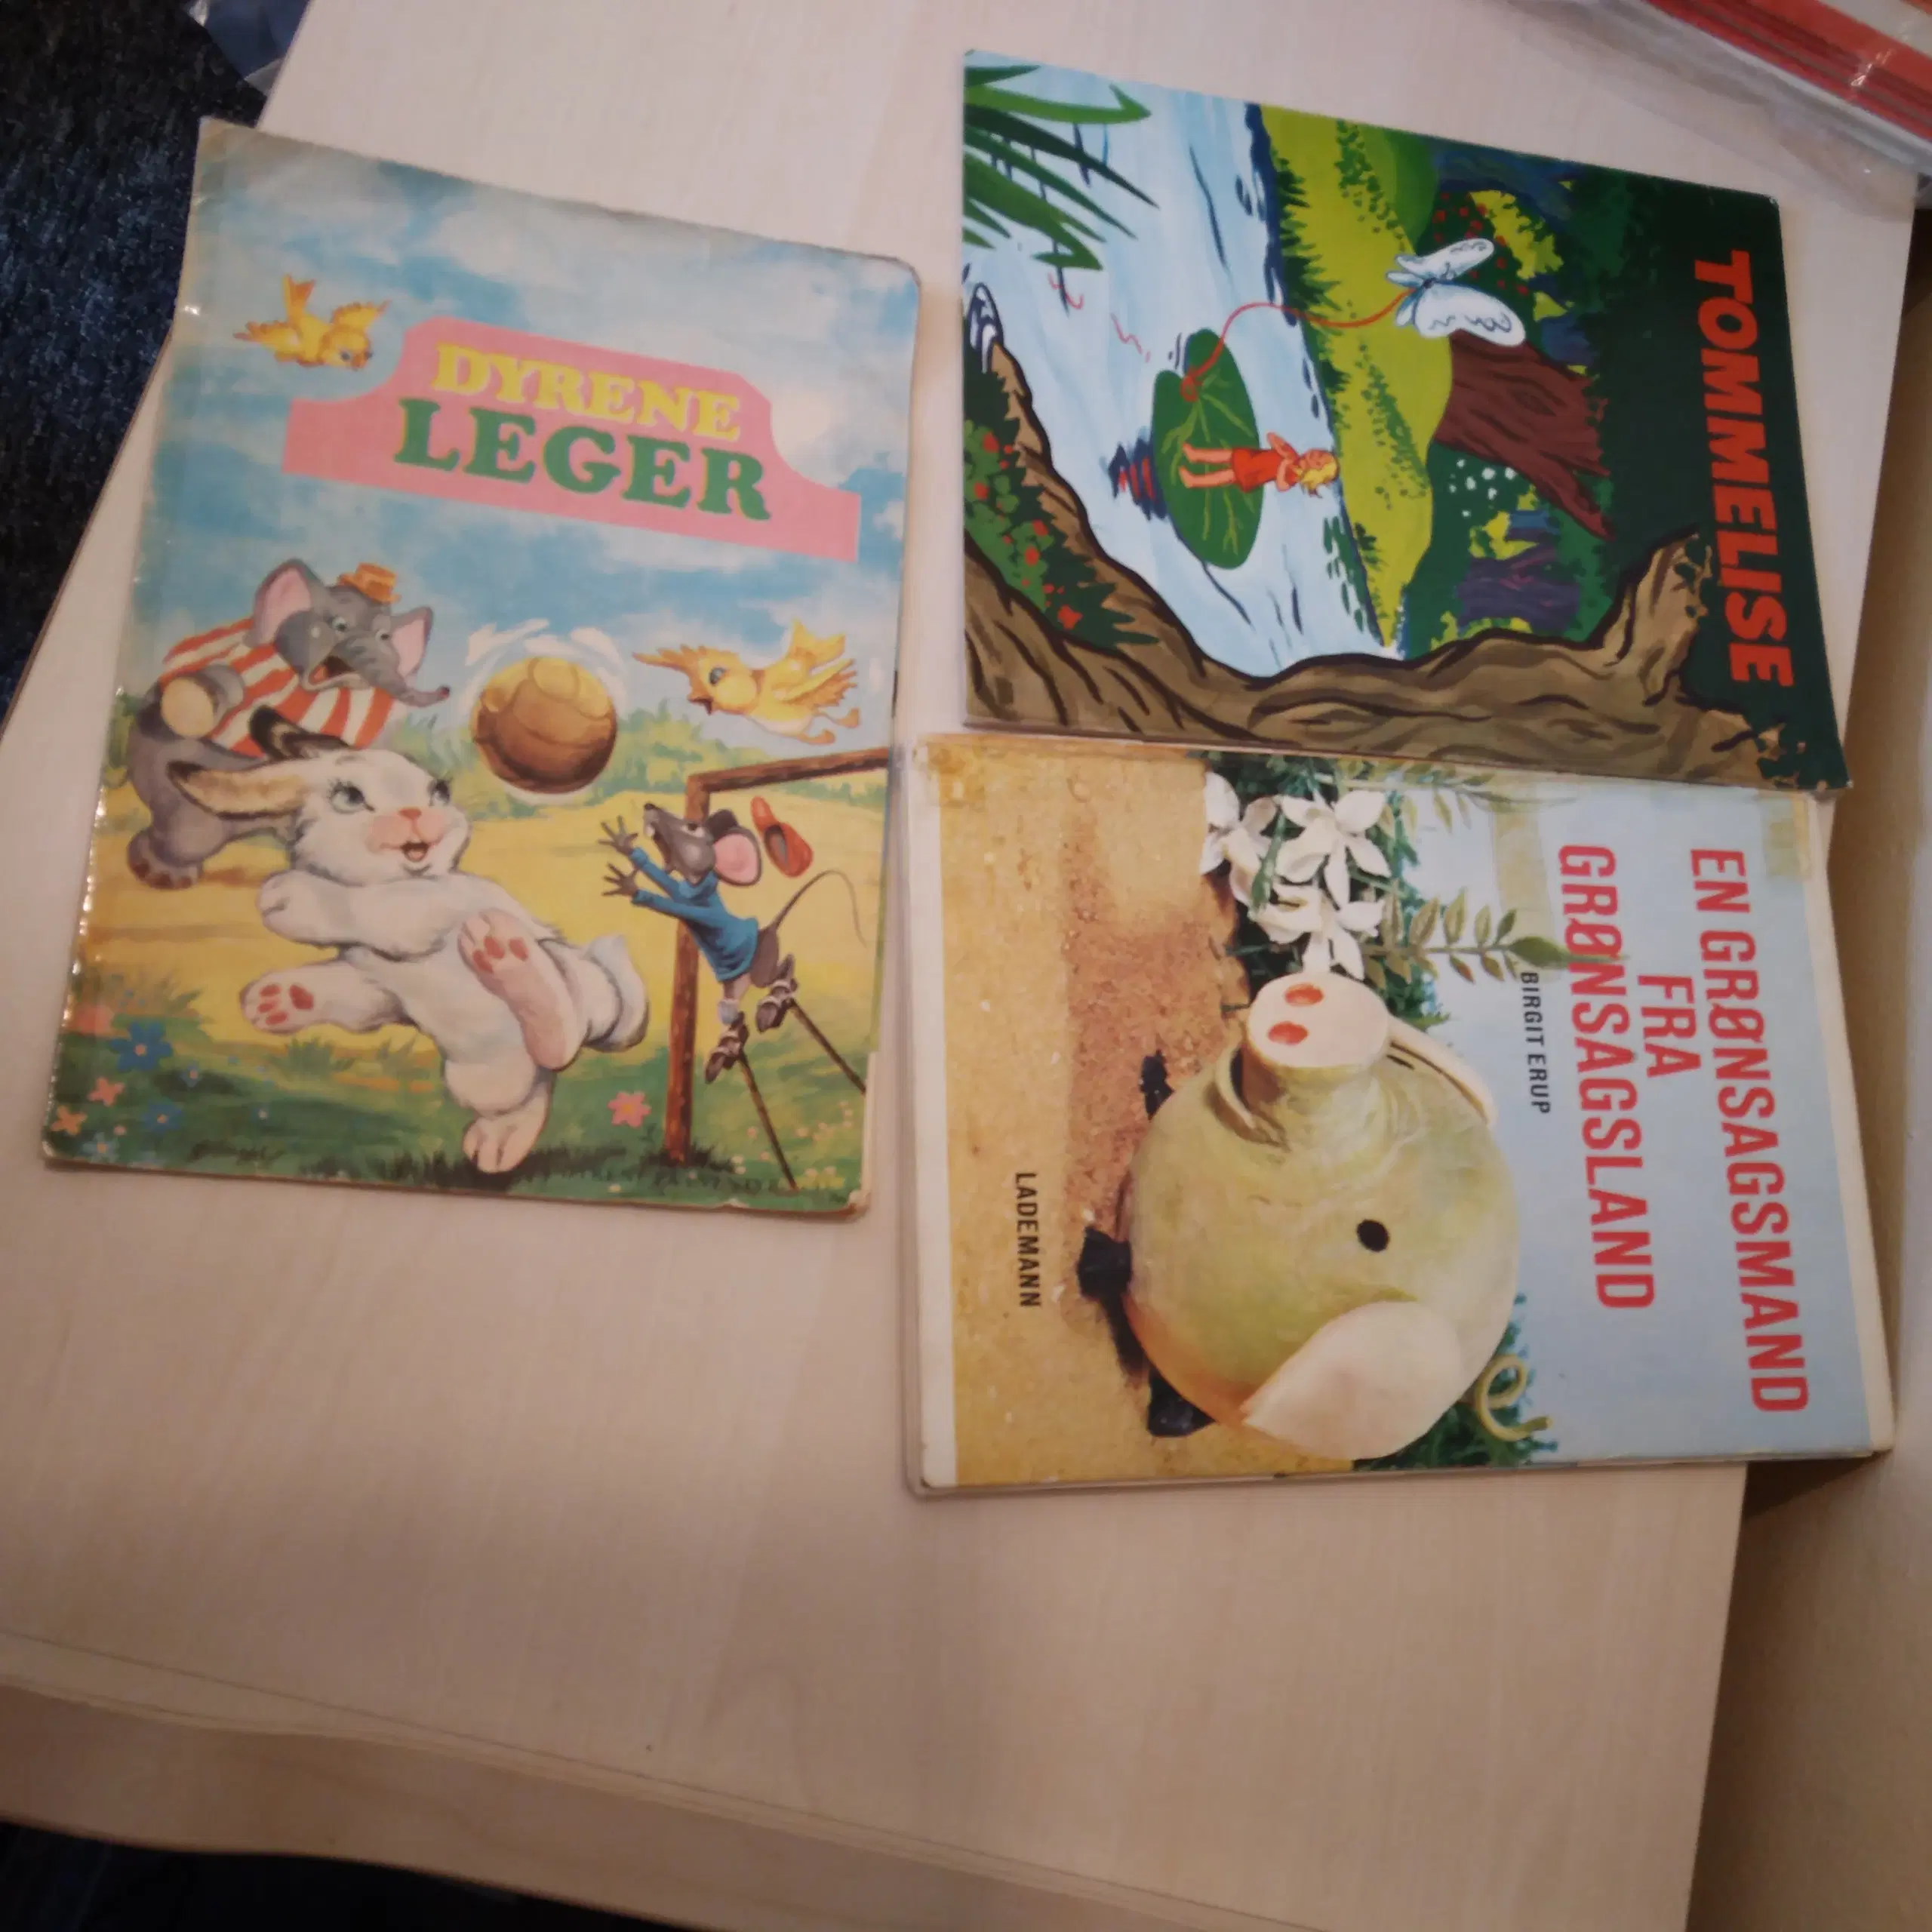 Børnelæsning - diverse hæfter og bøger